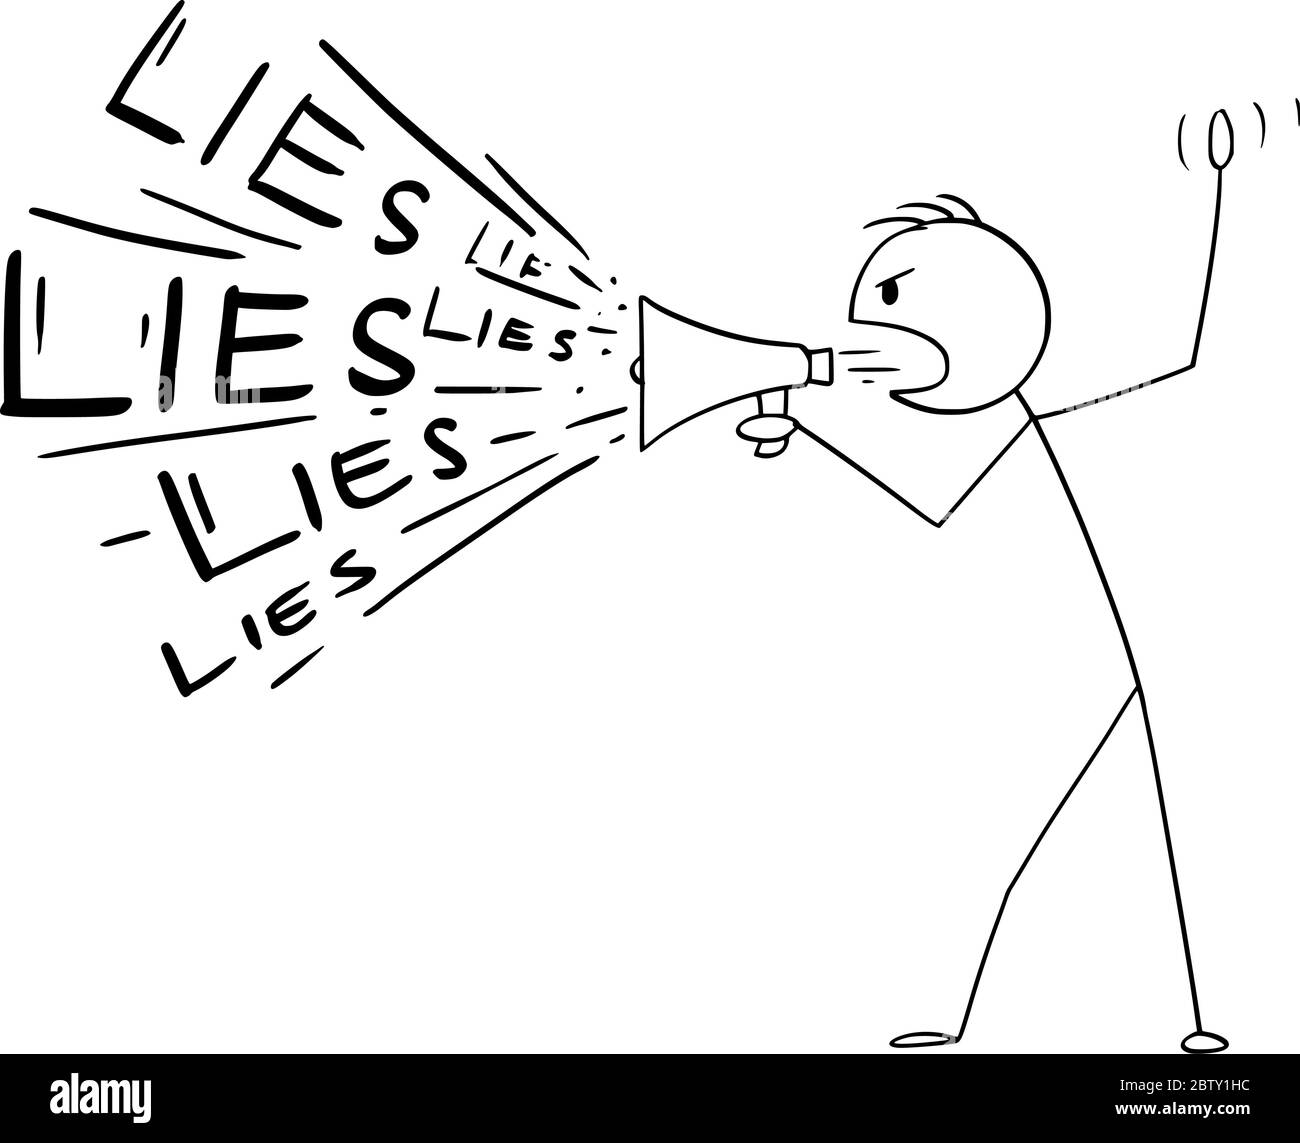 Vektor Cartoon Stick Figur Zeichnung konzeptionelle Illustration von Mann oder Politiker mit Lautsprecher oder Megaphon Lügen zu verbreiten. Stock Vektor